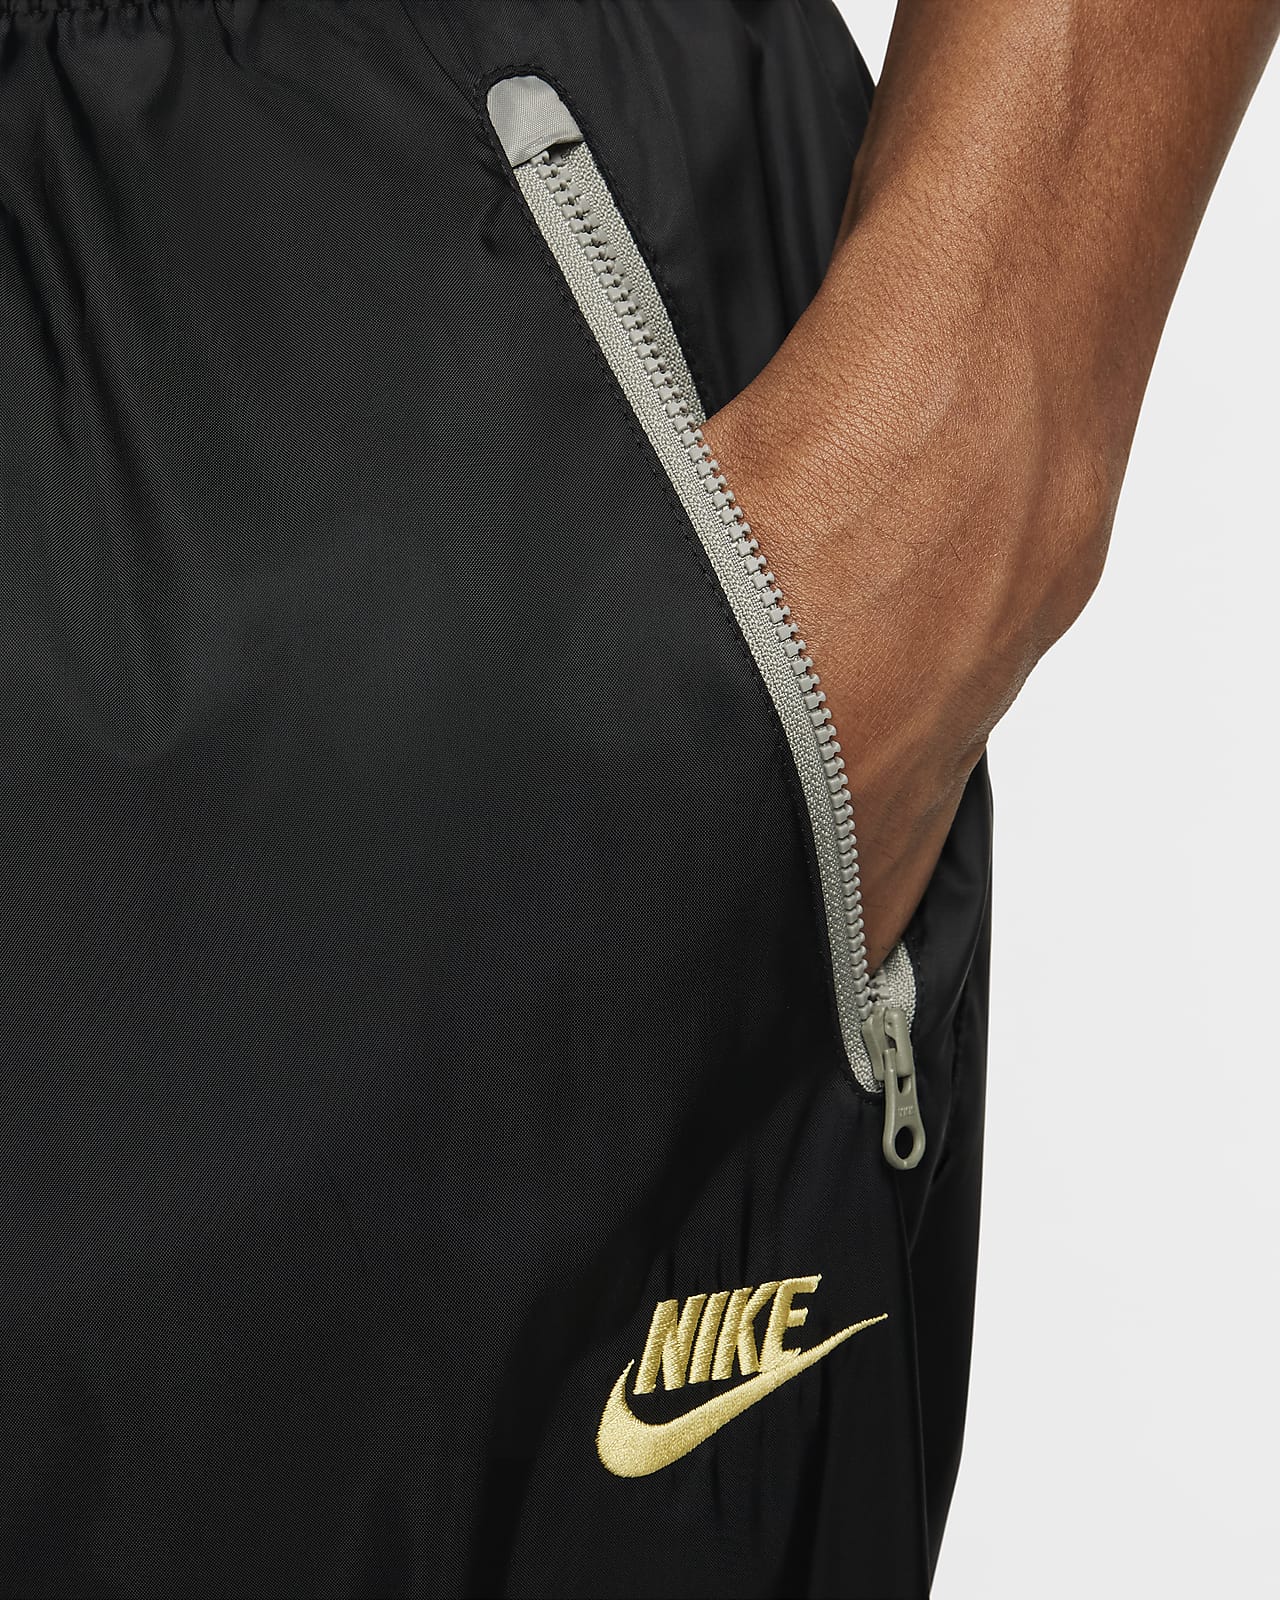 NIKE- Black Sportswear Windbreaker Track pants Zip Ankle Mesh Lining Size  Large